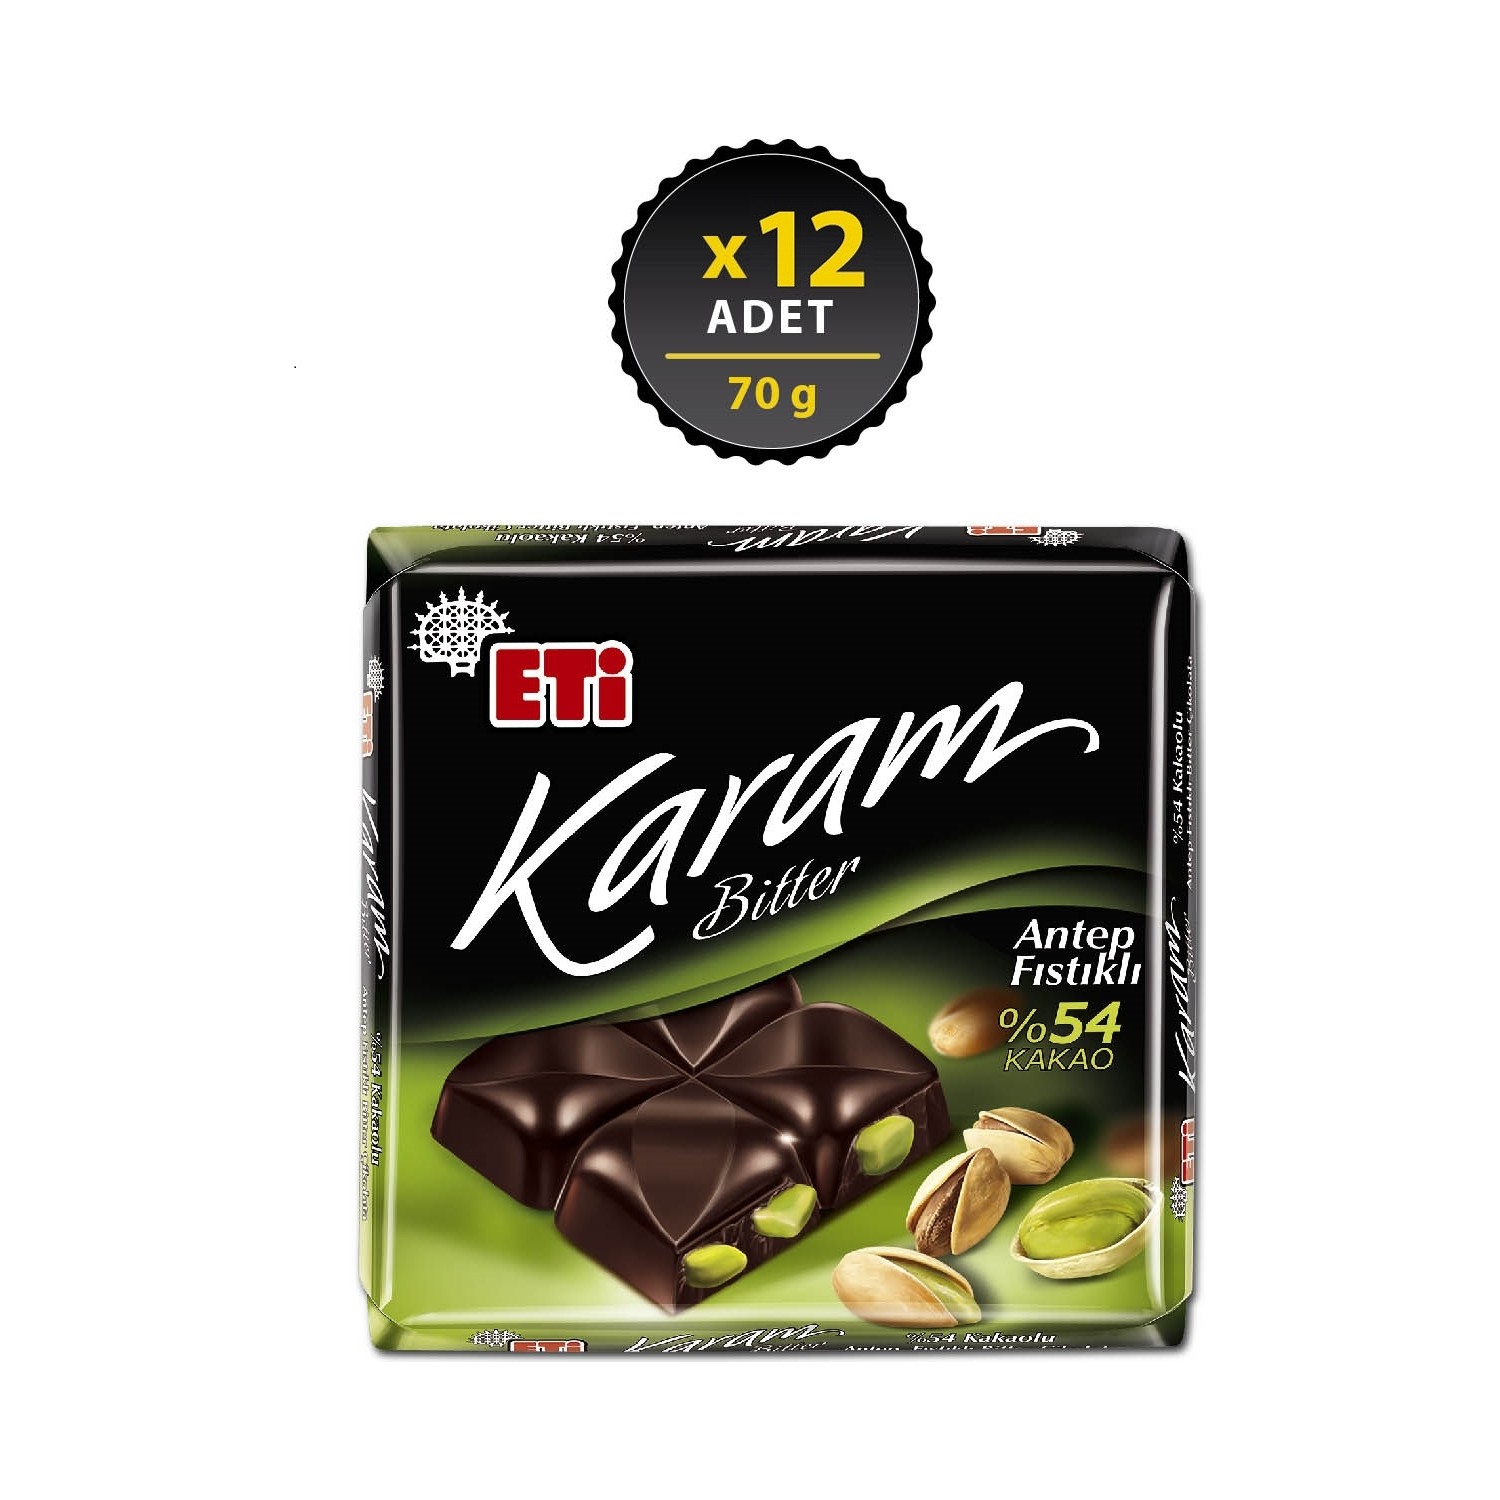 Eti Karam Antep Fıstıklı Kakaolu Bitter Çikolata 70 g x 12 Fiyatı